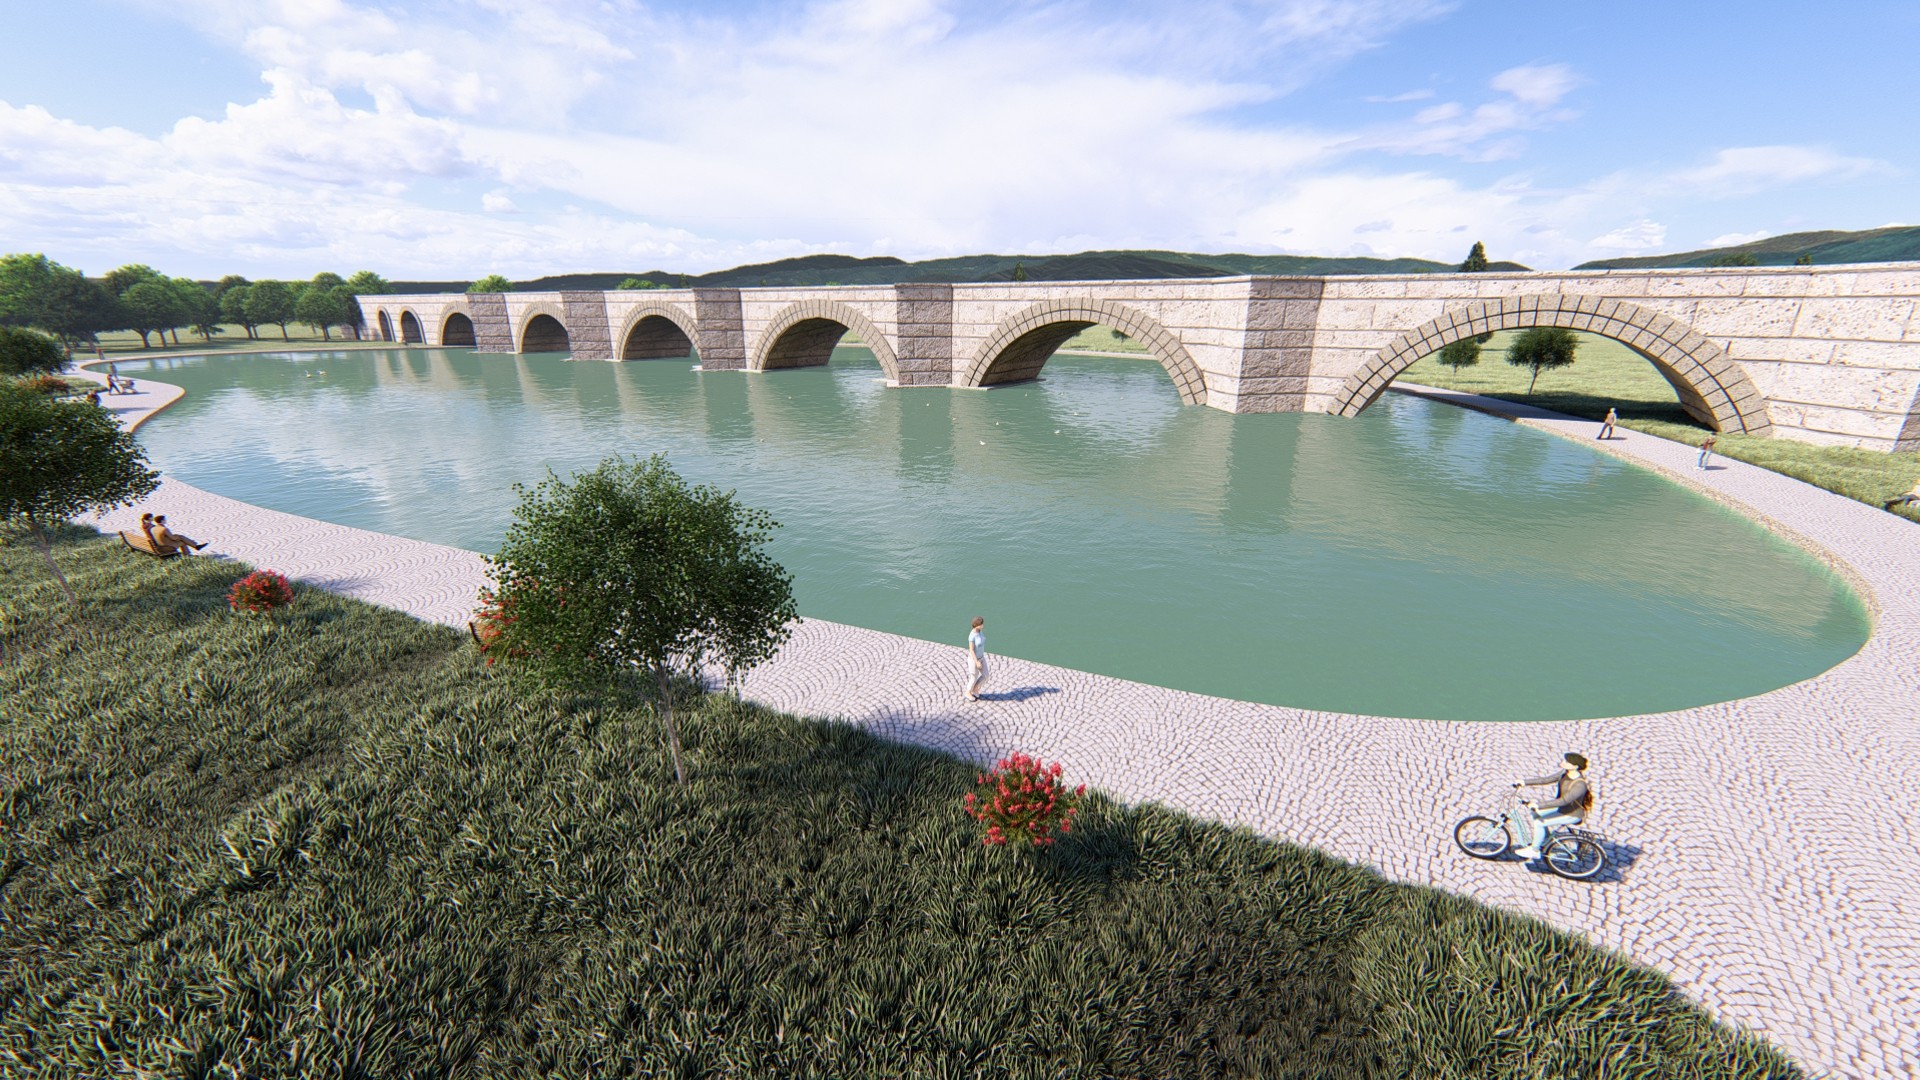 “Justinianus Köprüsü Ve Çevresini Muhteşem Bir Yaşam Vadisine Dönüştüreceğiz”